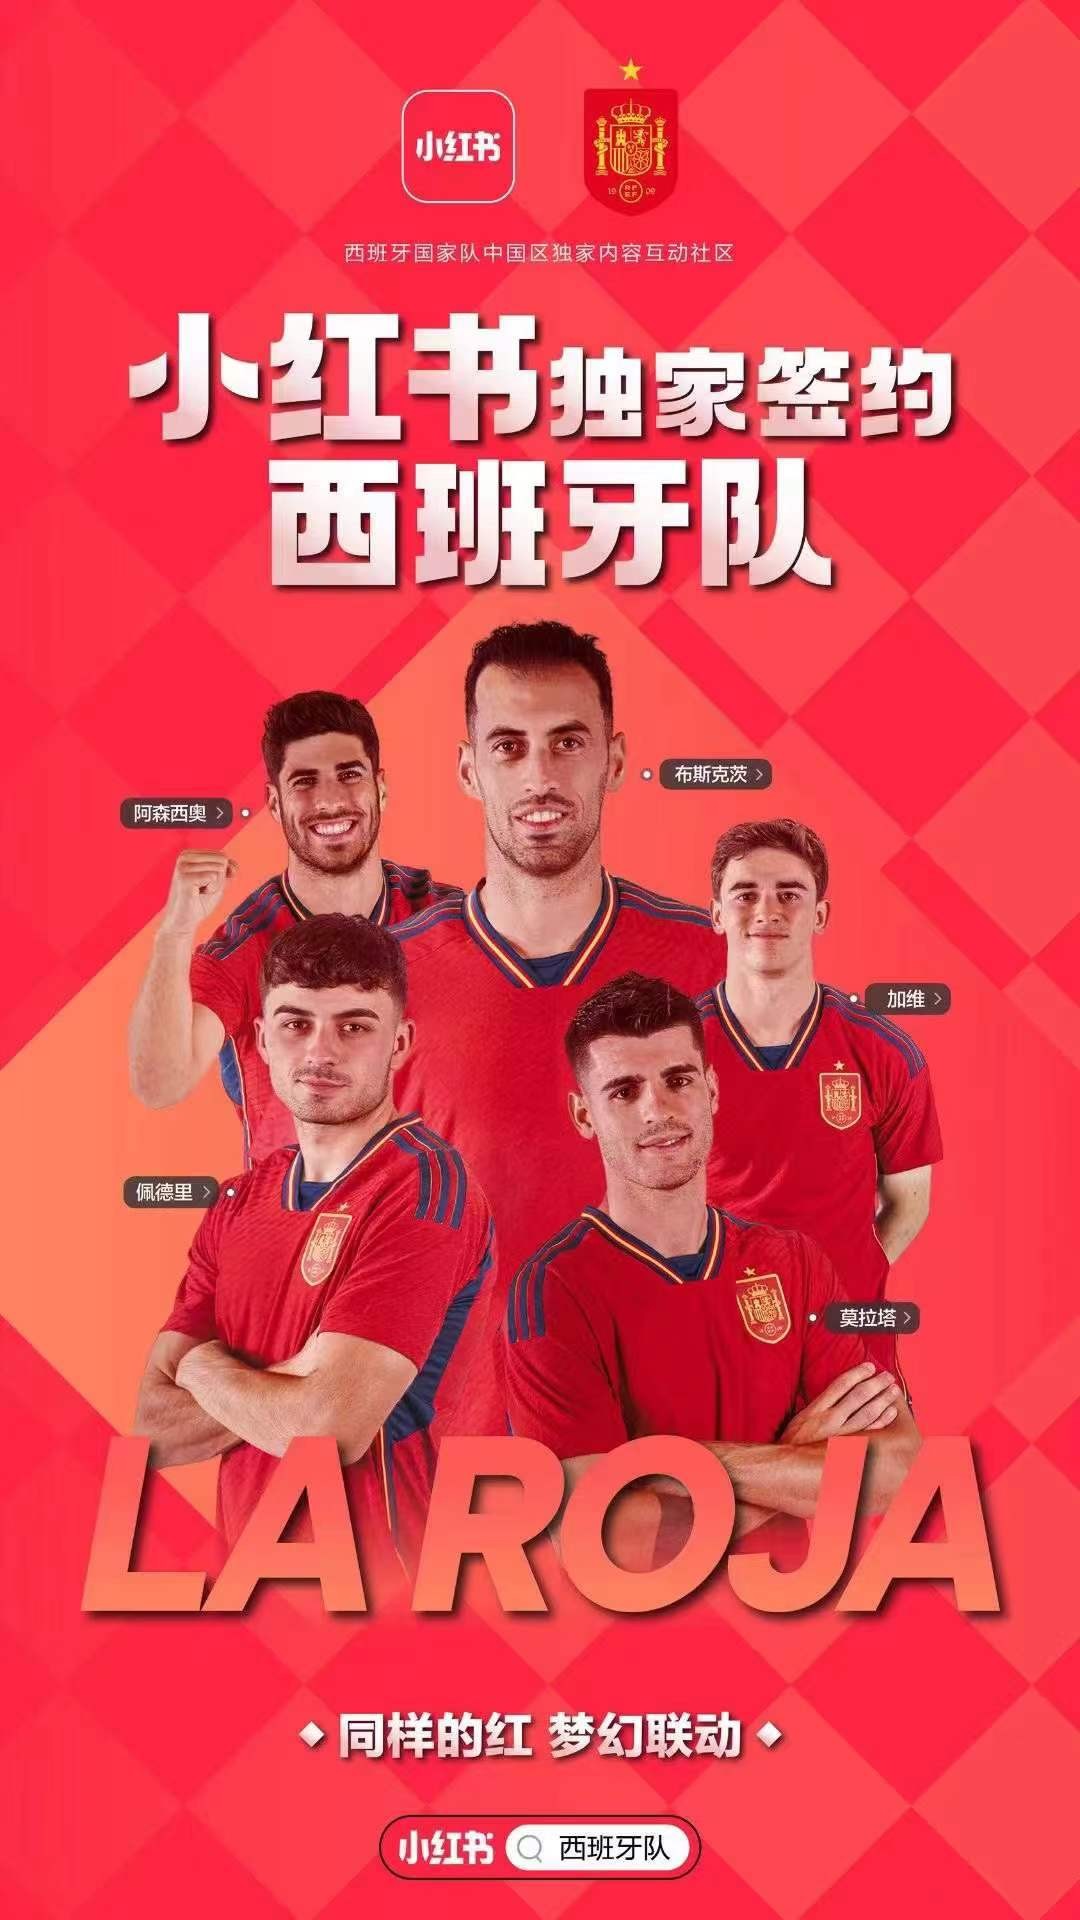 SPORTFIVE助力小红书成为西班牙国家队在中国的独家内容互动社区合作伙伴#